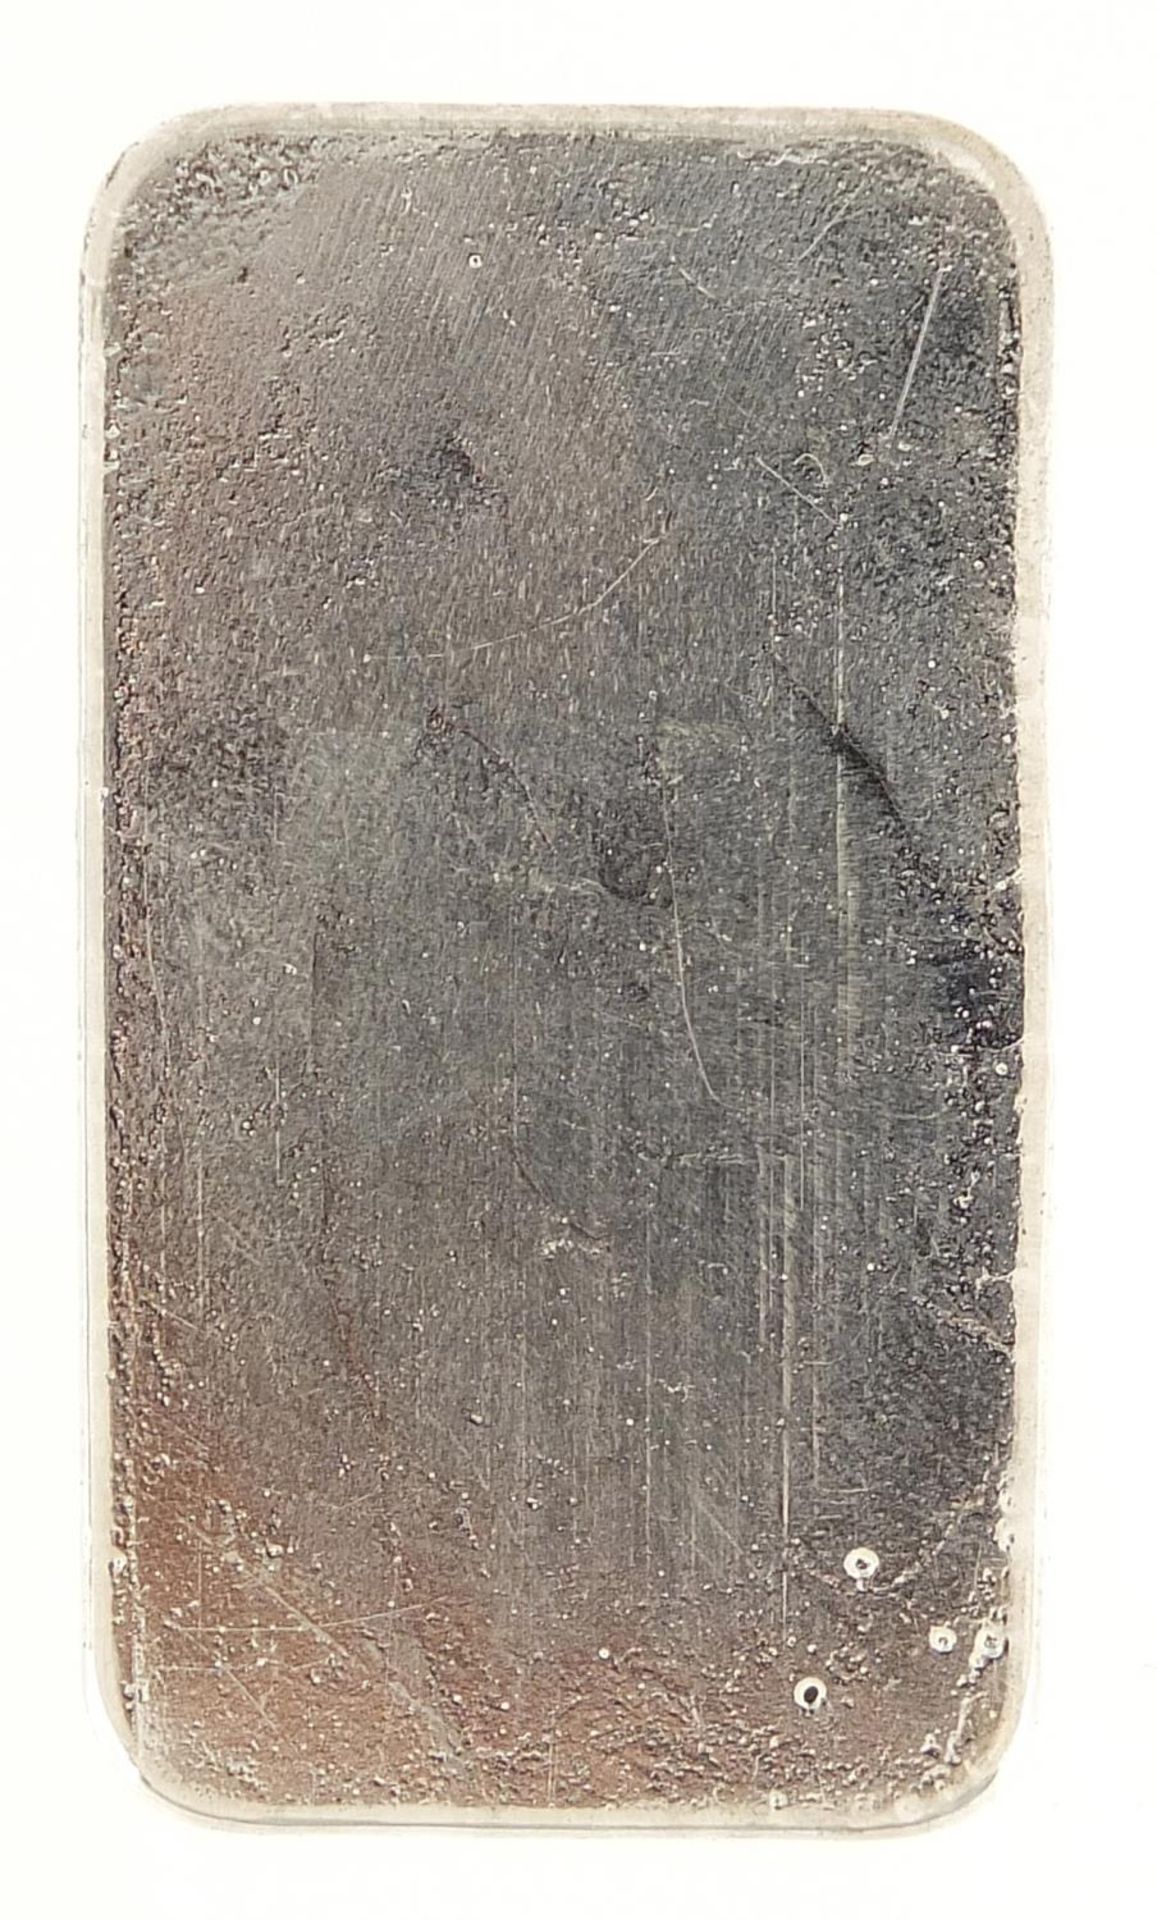 999 fine silver 100g ingot by Betts, 4.5cm x 2.5cm - Image 2 of 2